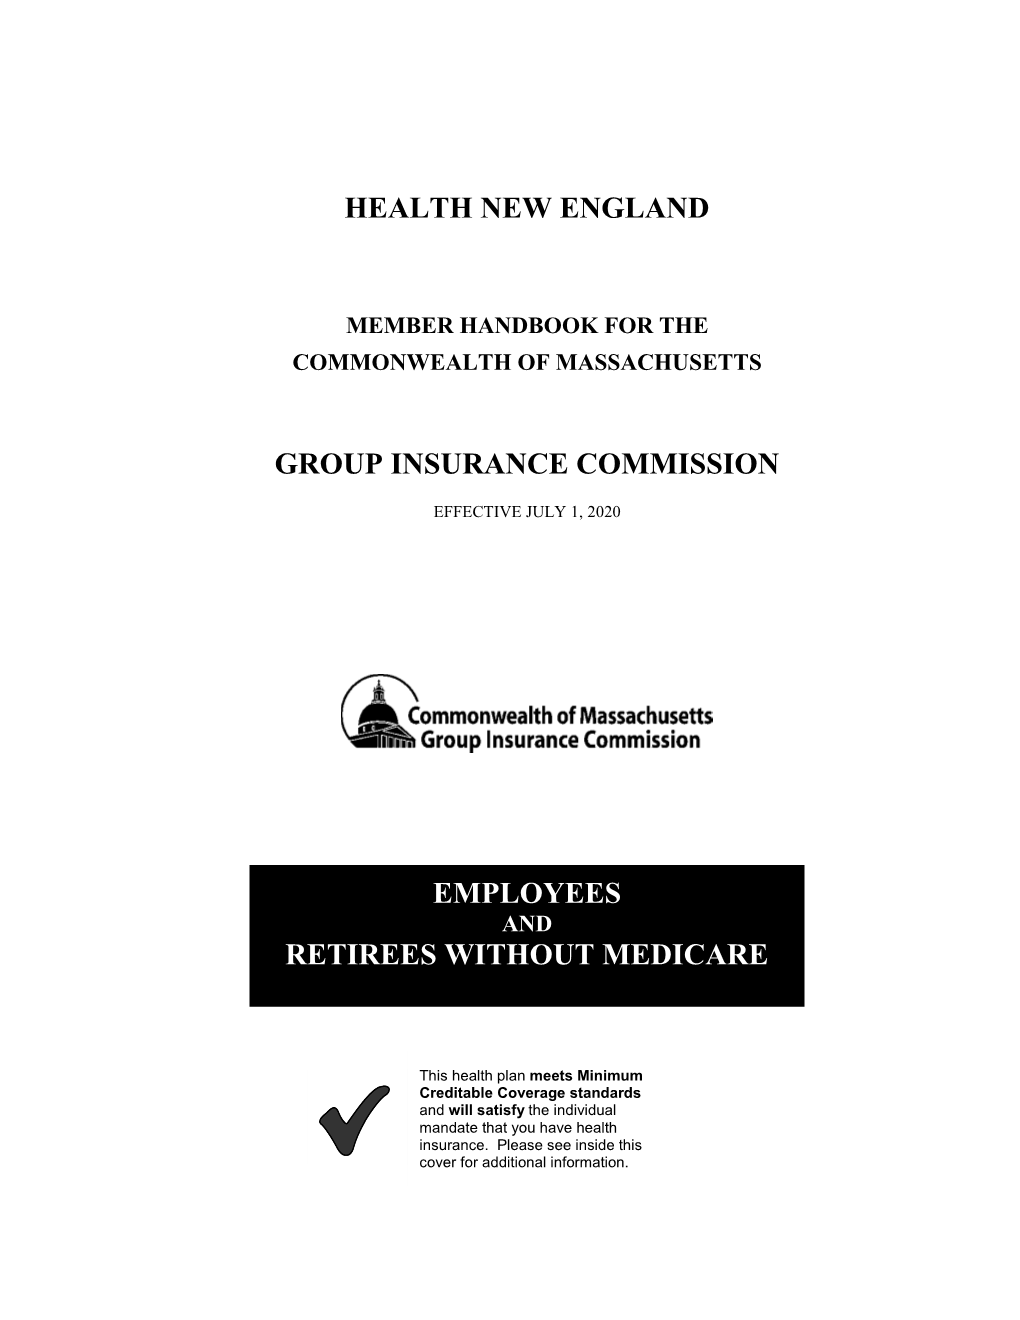 Member Handbook for the Commonwealth of Massachusetts